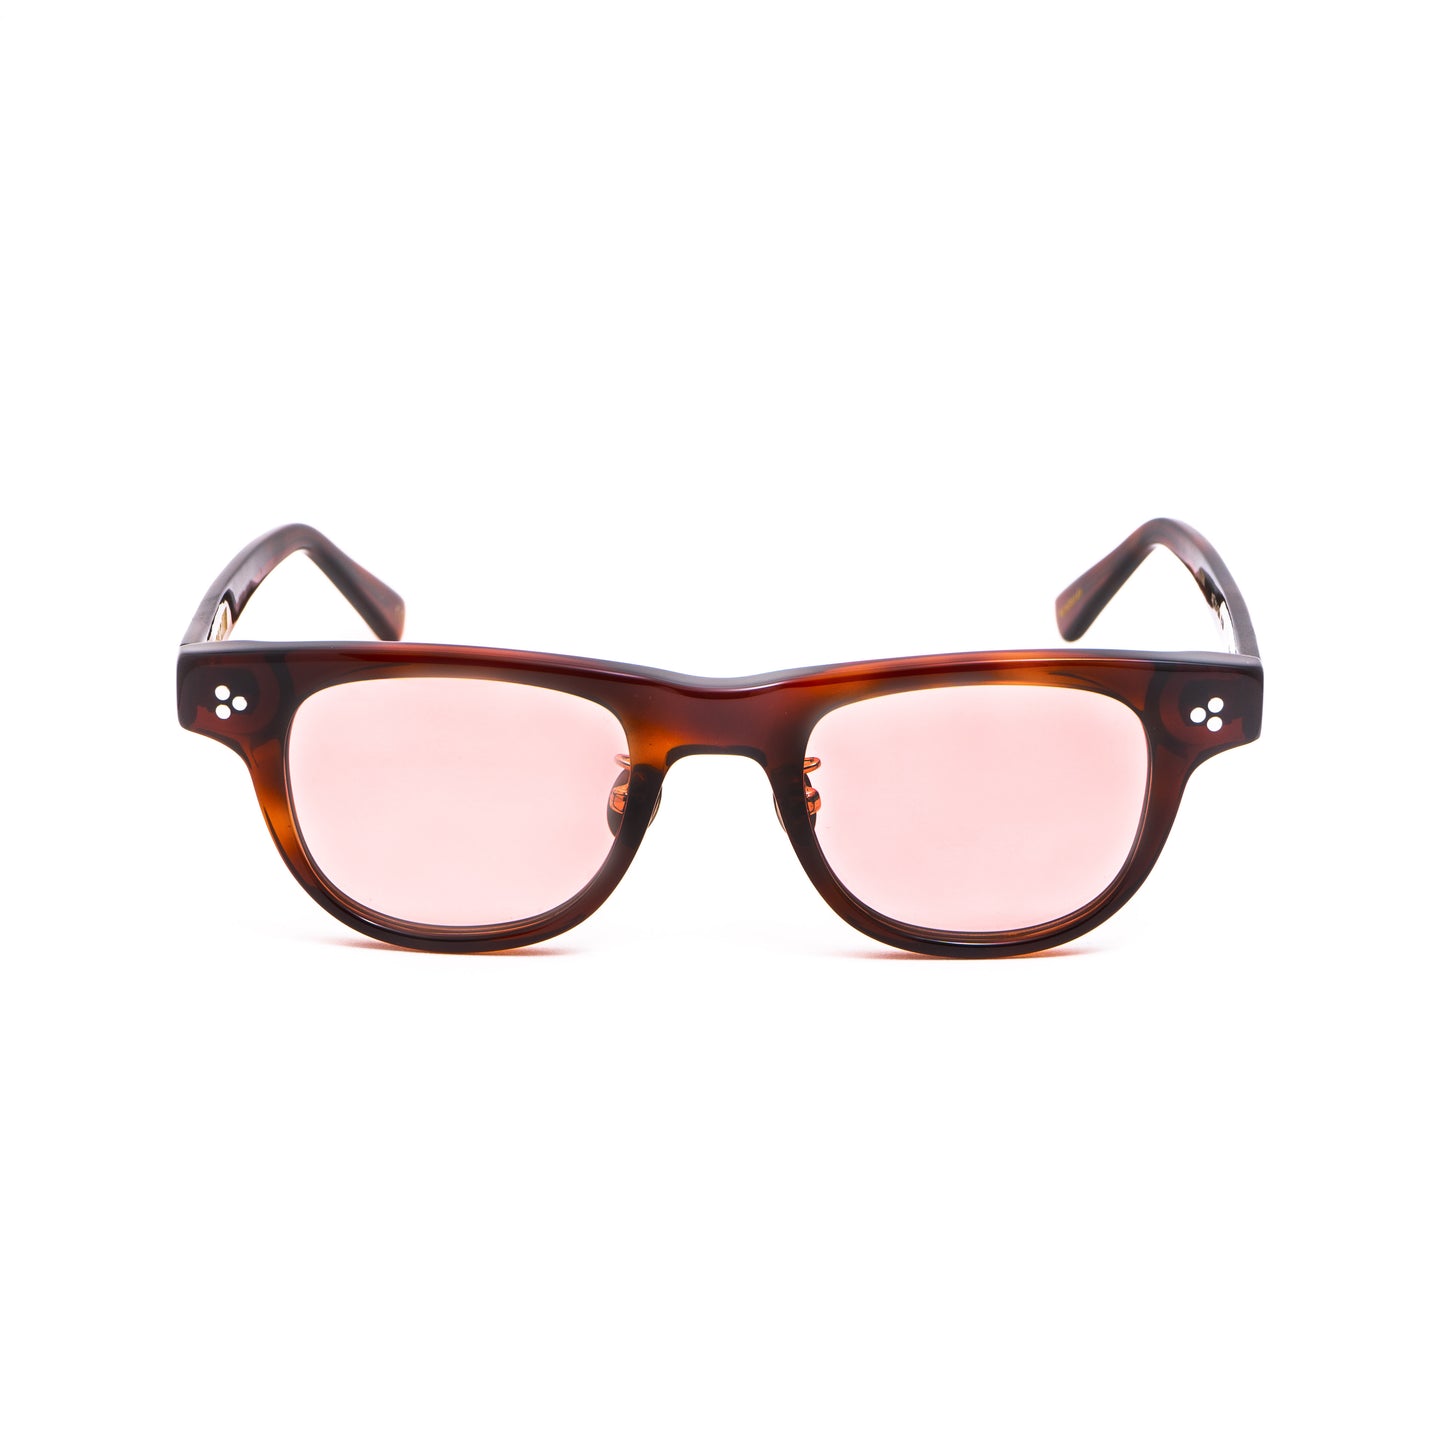 cassio - Sunglasses Brown